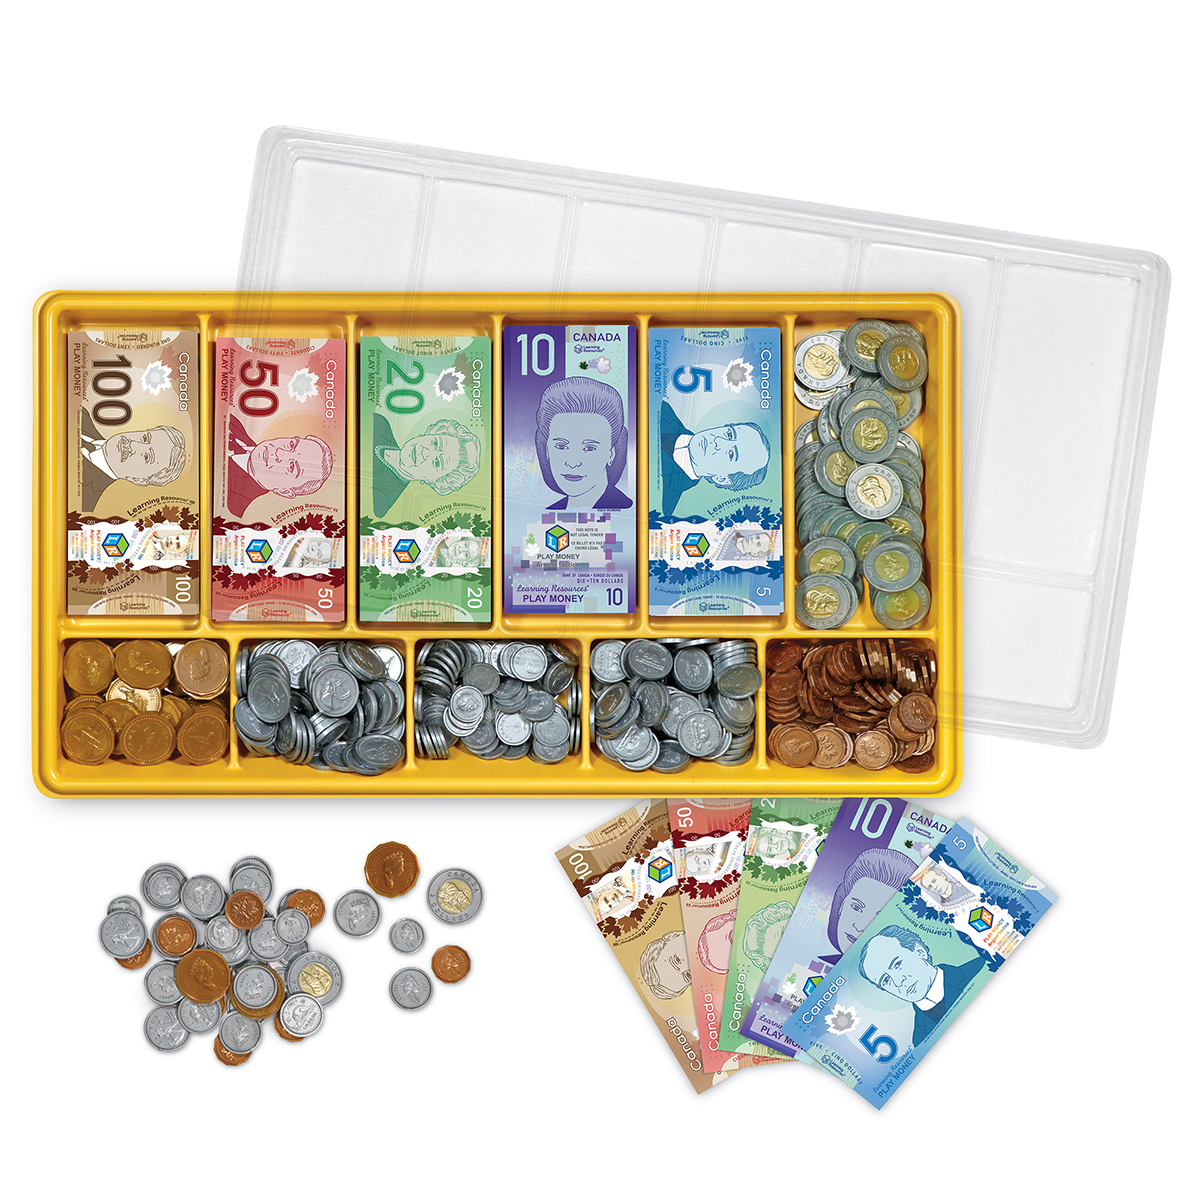  Canadian Classroom Money Kit 